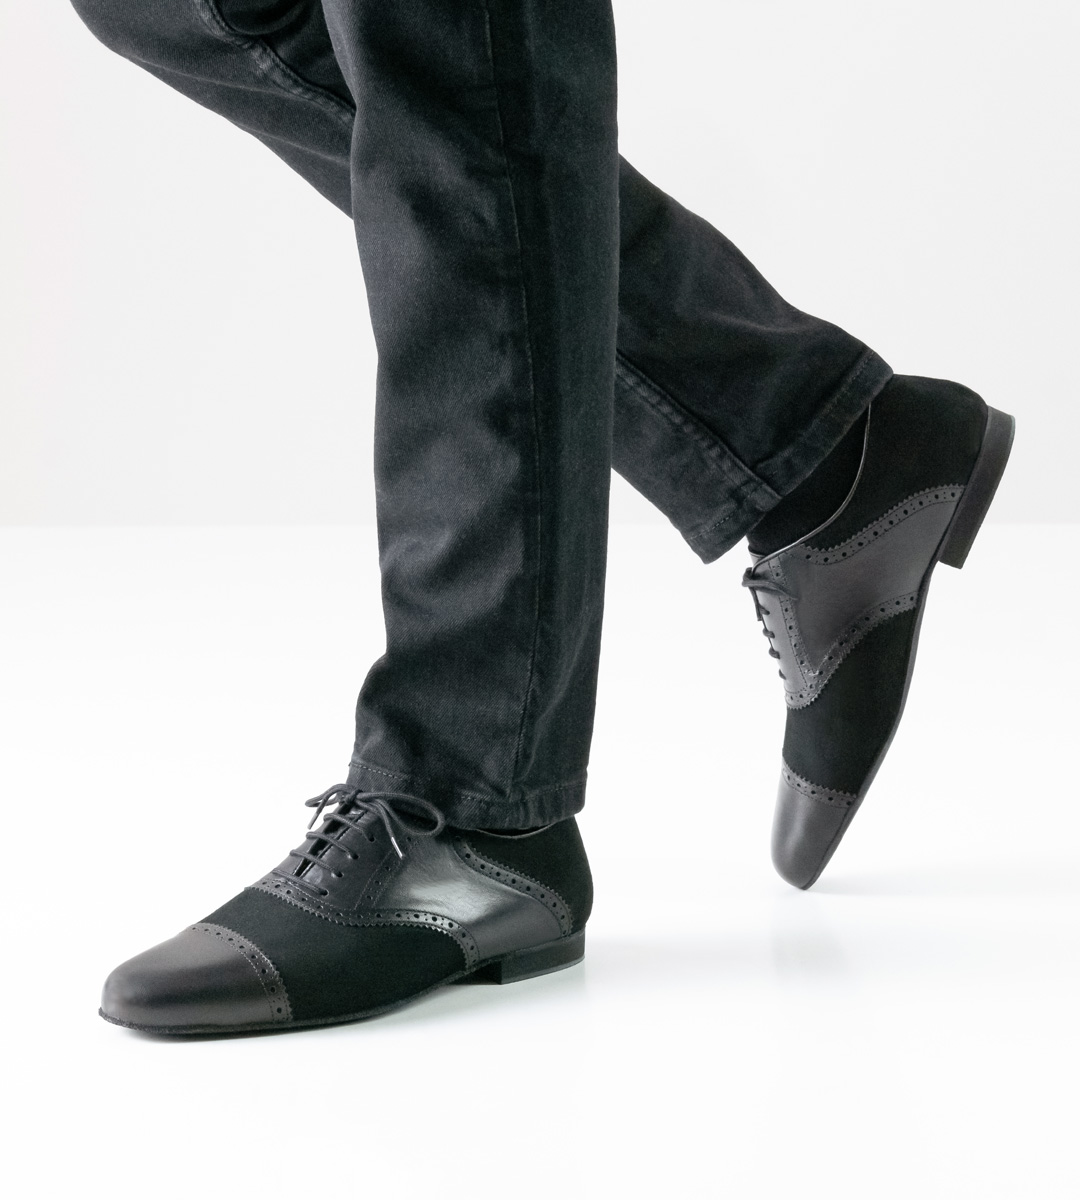 Chaussures de danse pour hommes de Werner Kern en combinaison de cuir et velours